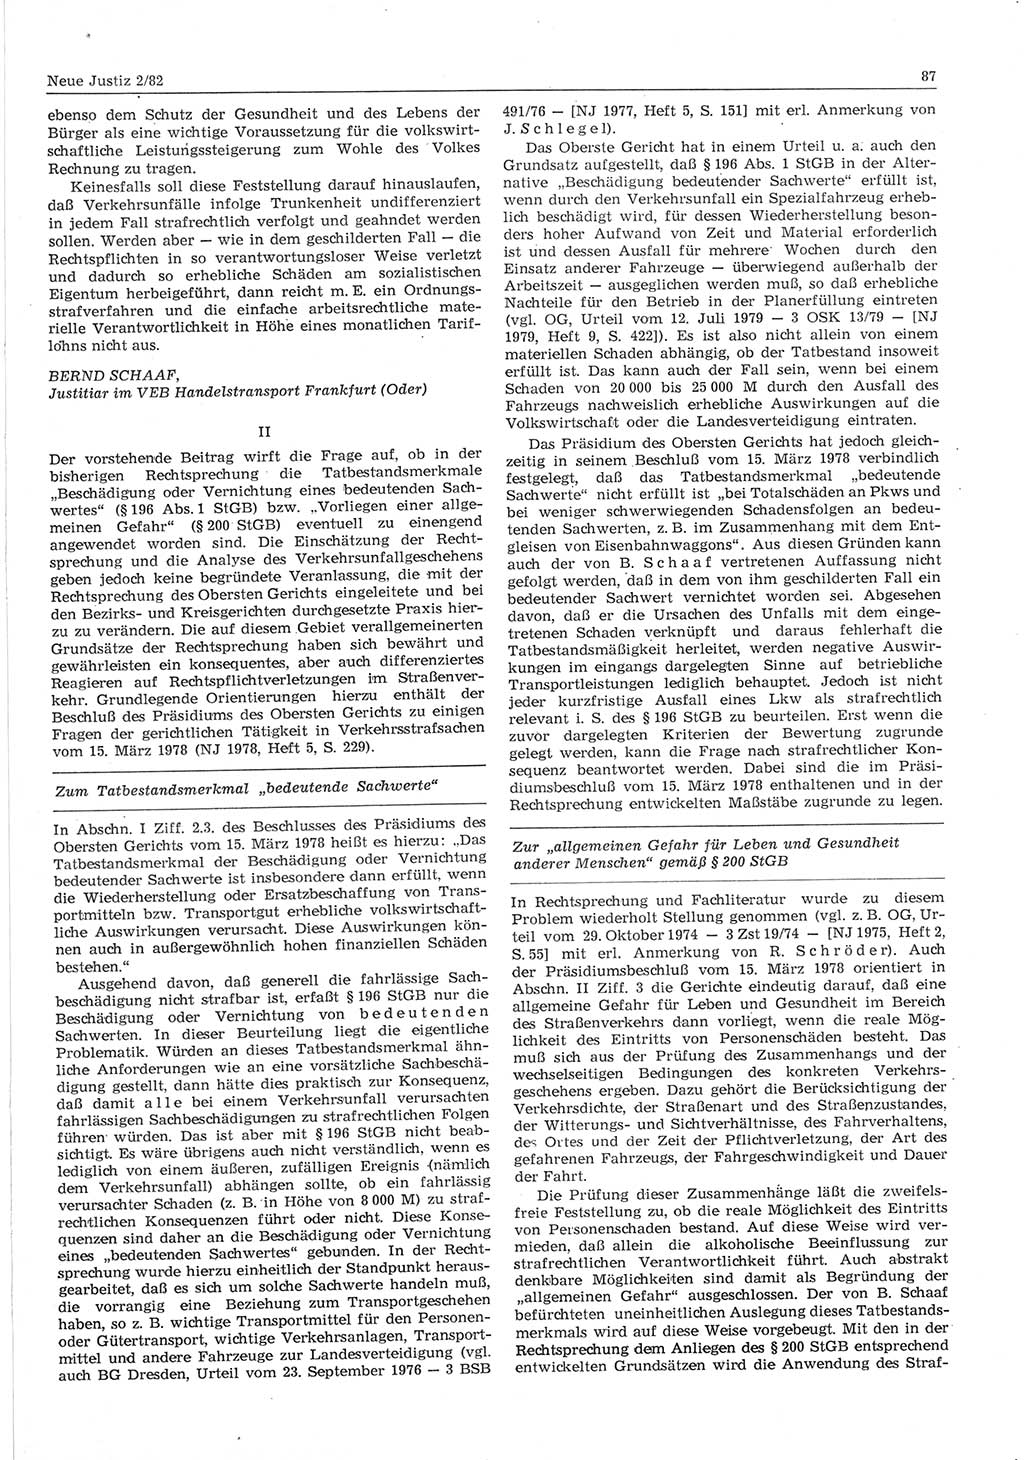 Neue Justiz (NJ), Zeitschrift für sozialistisches Recht und Gesetzlichkeit [Deutsche Demokratische Republik (DDR)], 36. Jahrgang 1982, Seite 87 (NJ DDR 1982, S. 87)